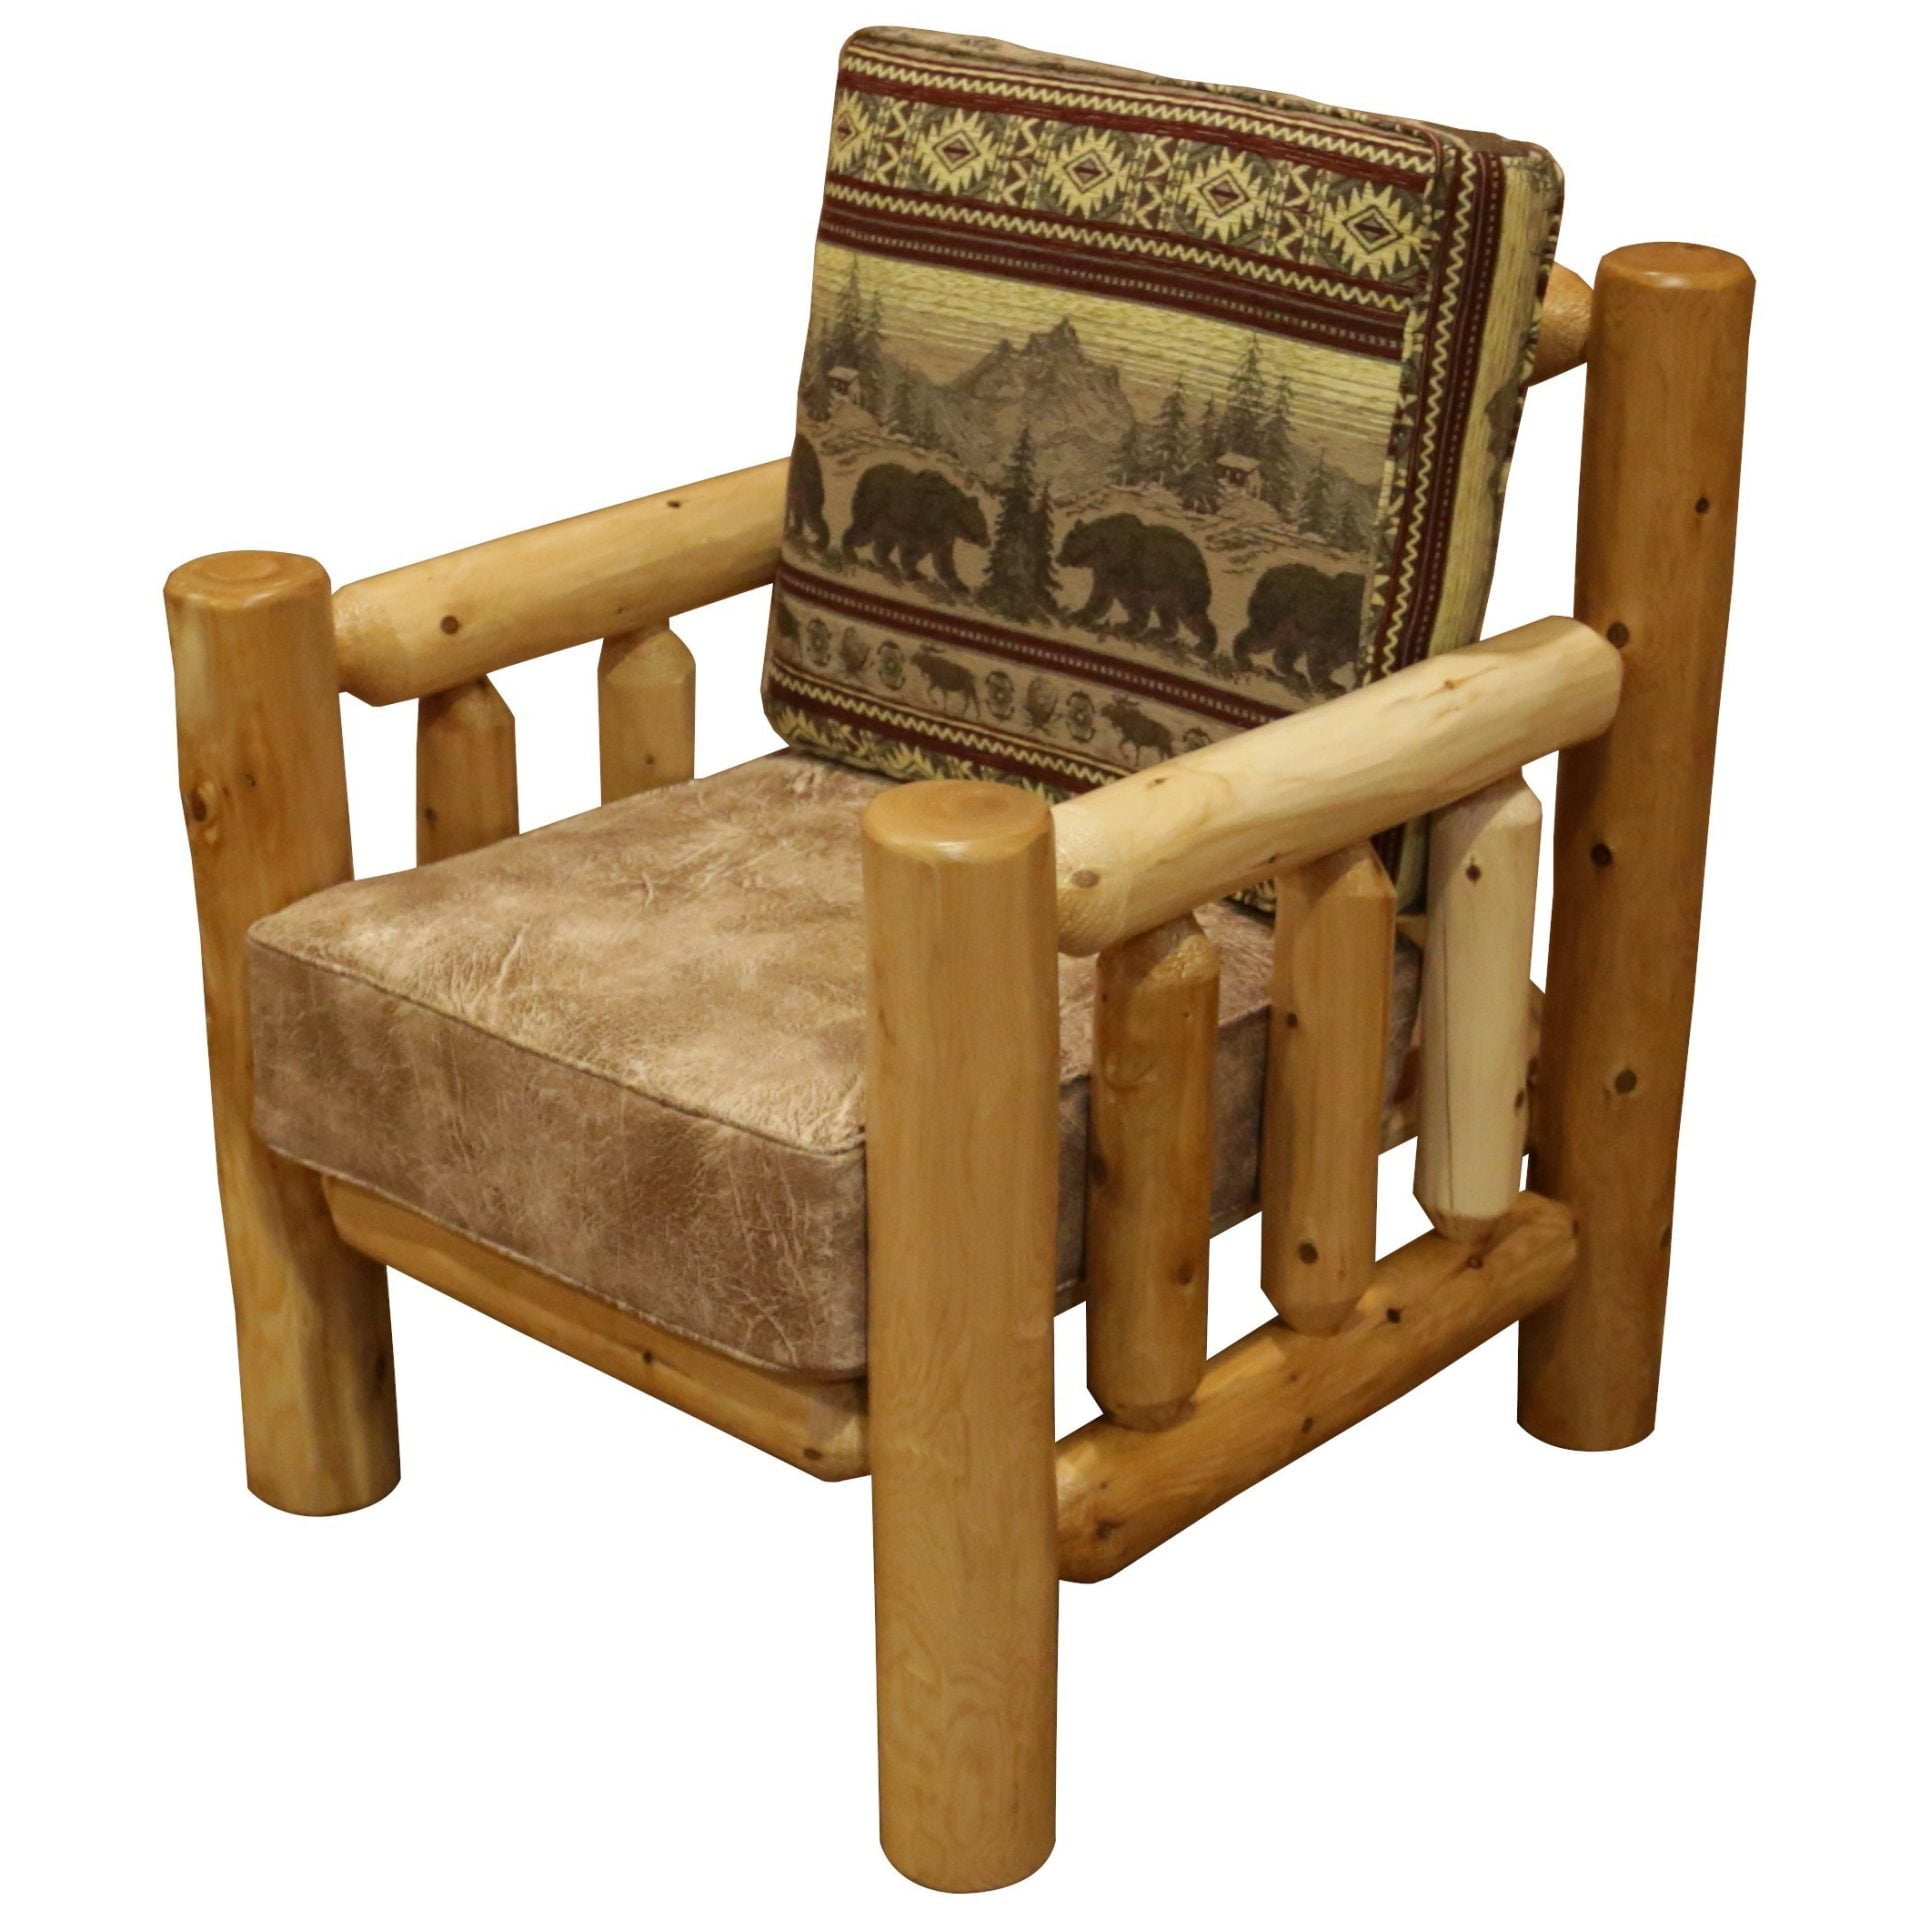 Rustic White Cedar Log Santa Fe Chair